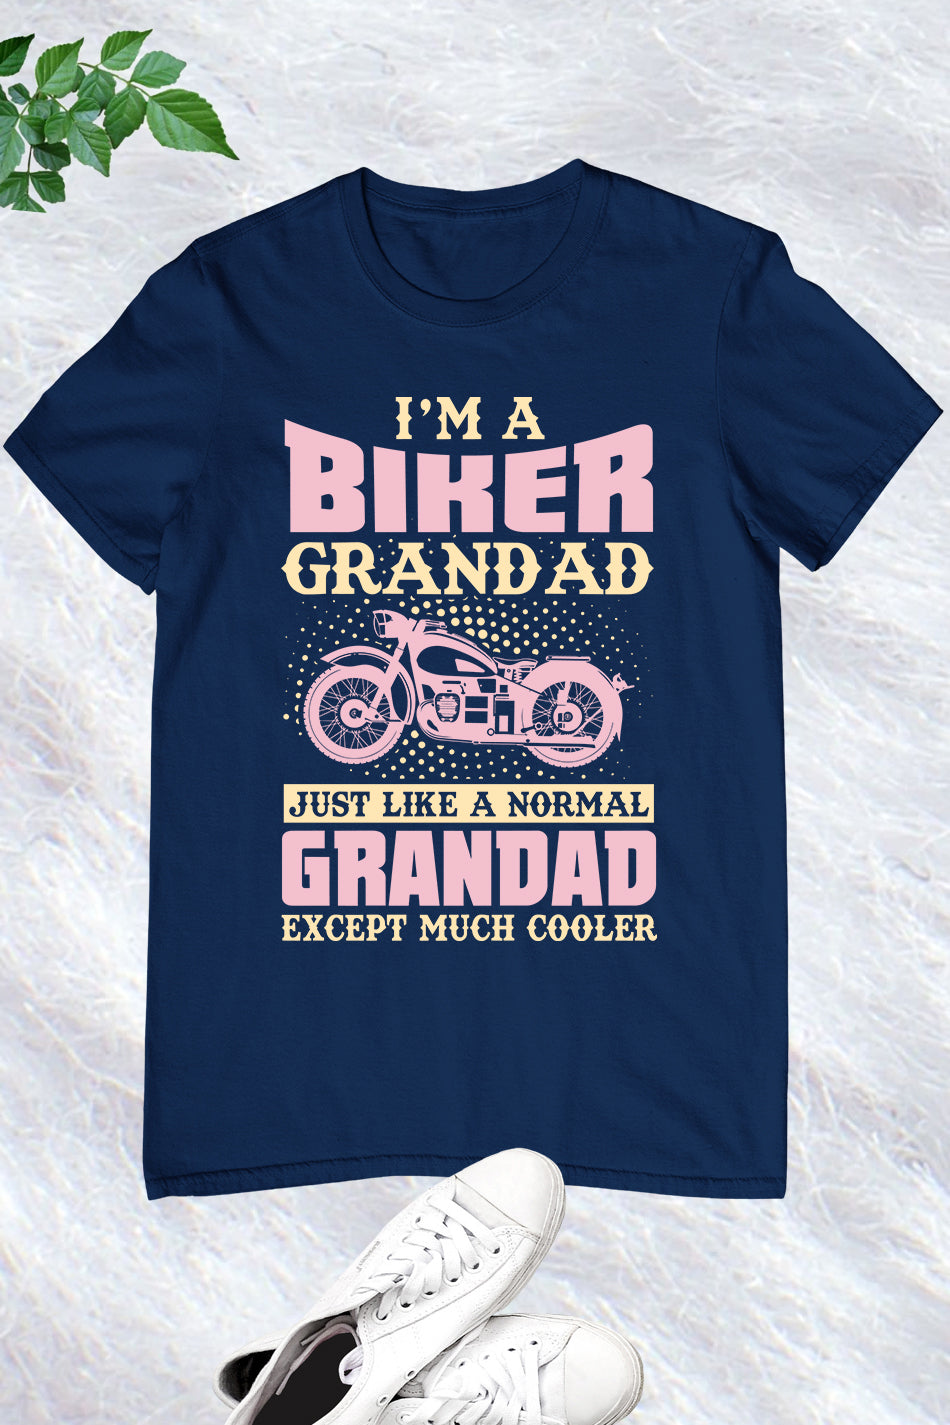 I'm a Biker Granddad T-Shirt